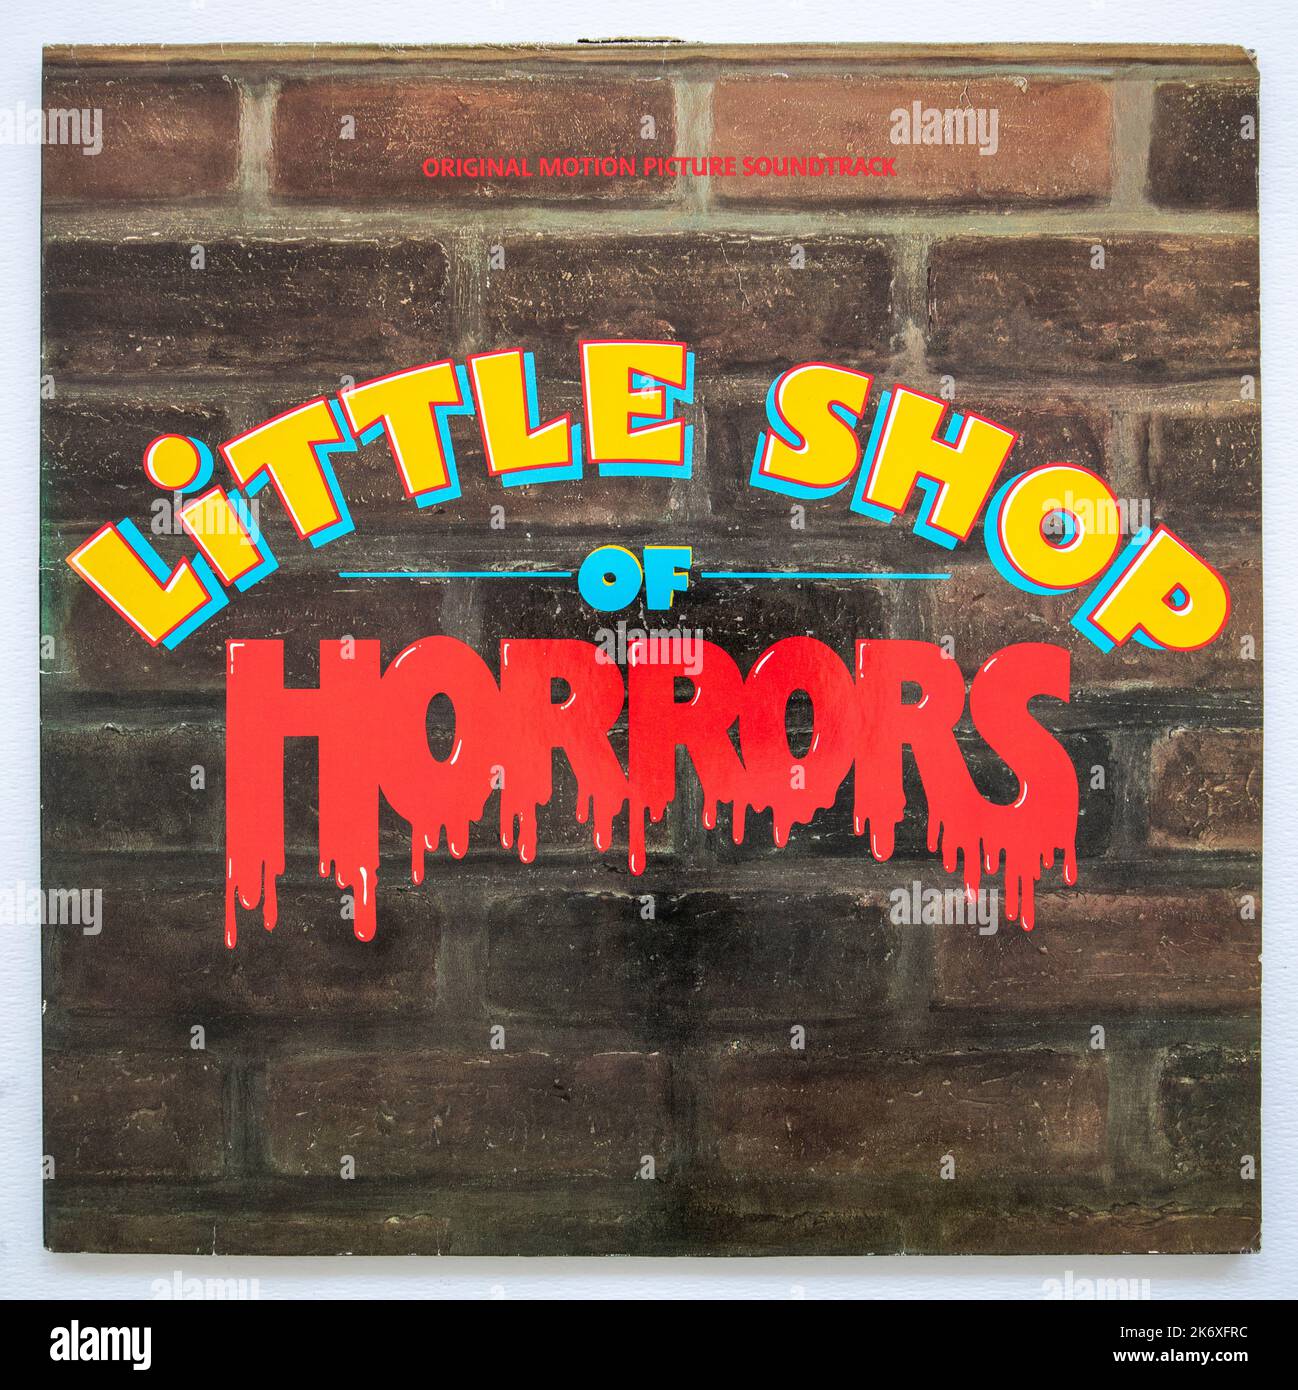 Copertina LP dell'album originale della colonna sonora del film Little Shop of Horrors del 1986 Foto Stock